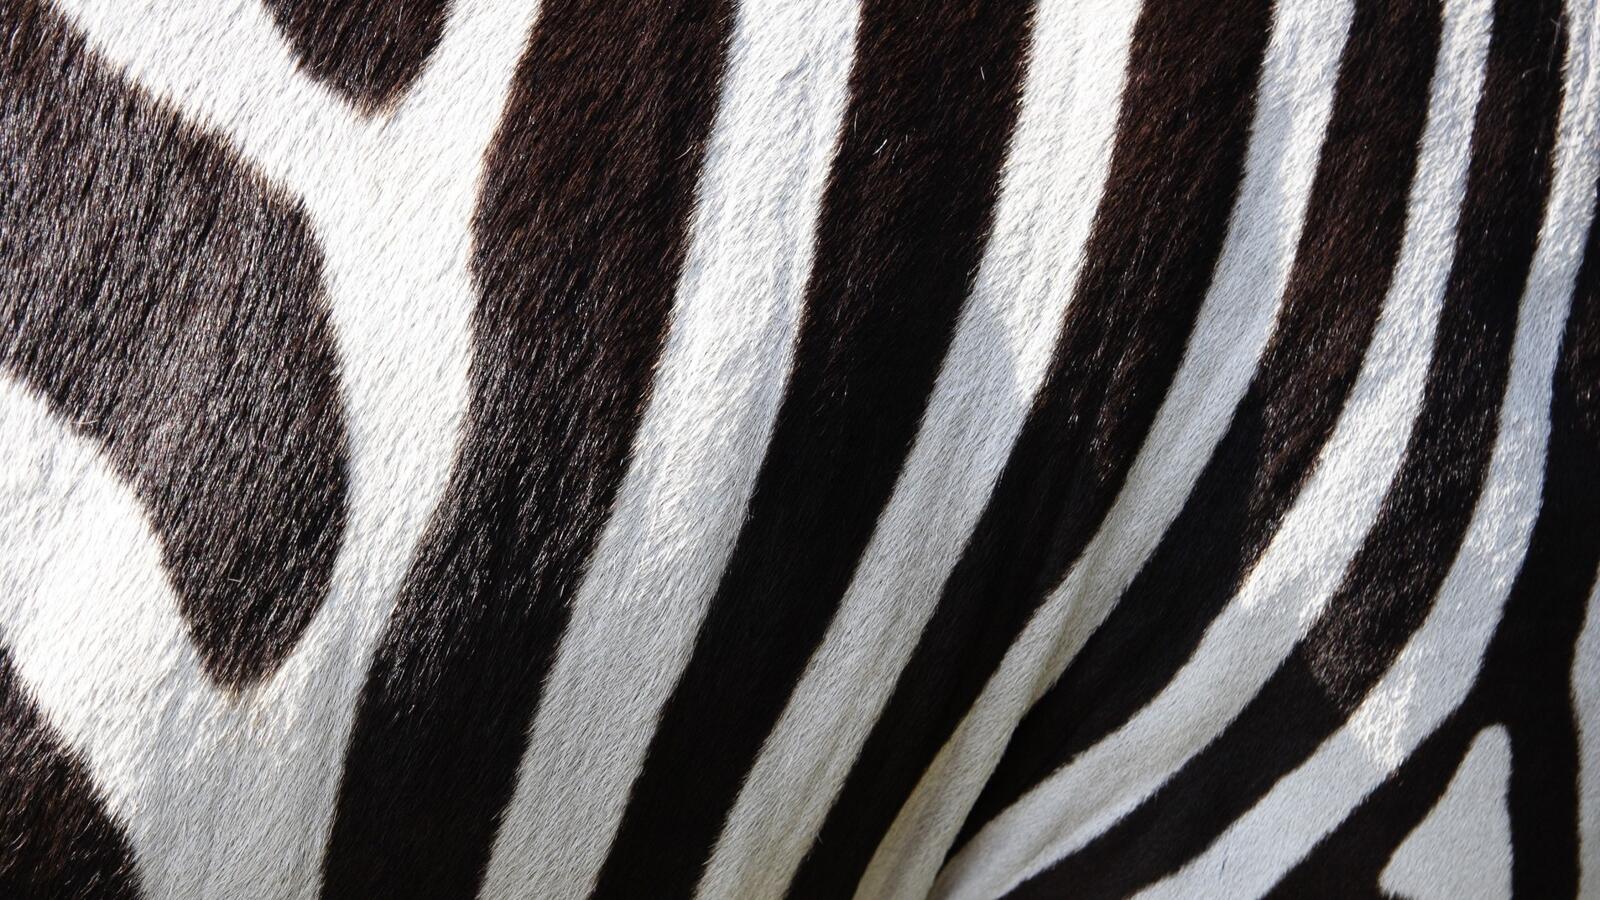 Wallpapers textures zebra animals on the desktop